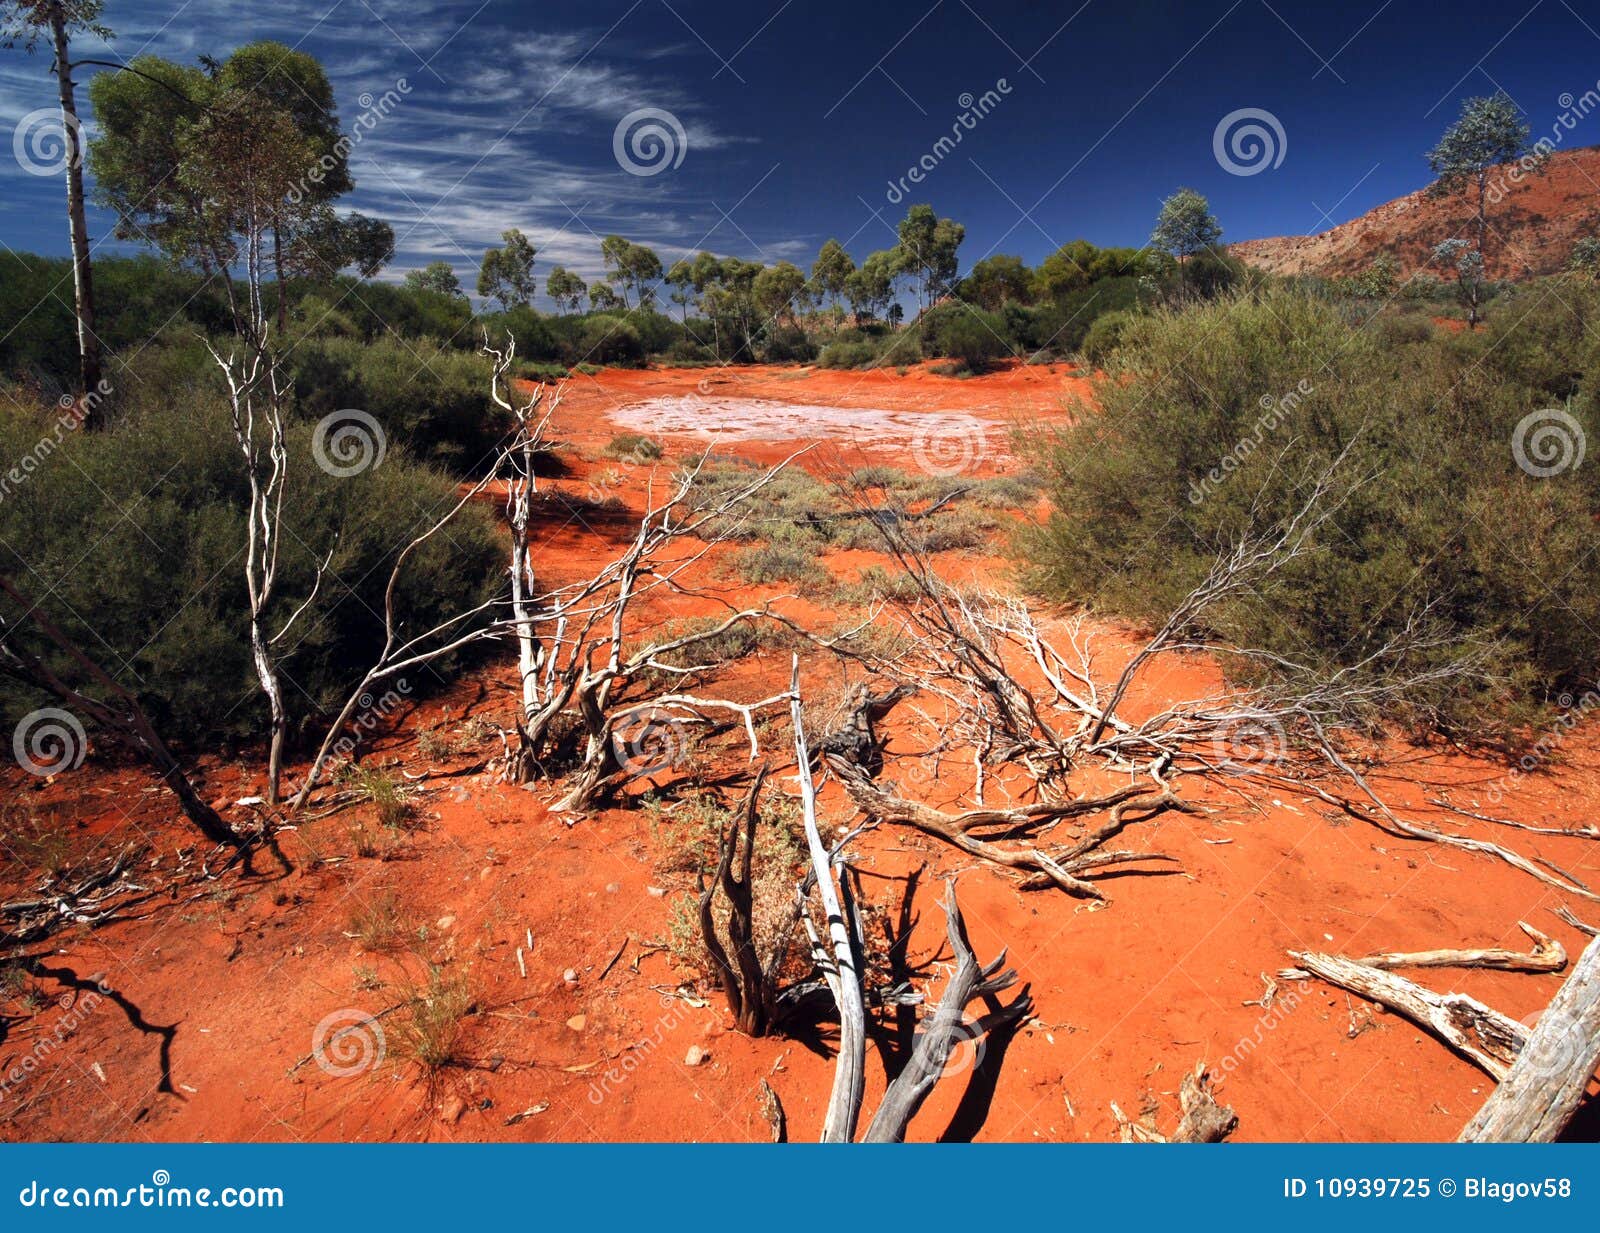 salt lake in australian desert